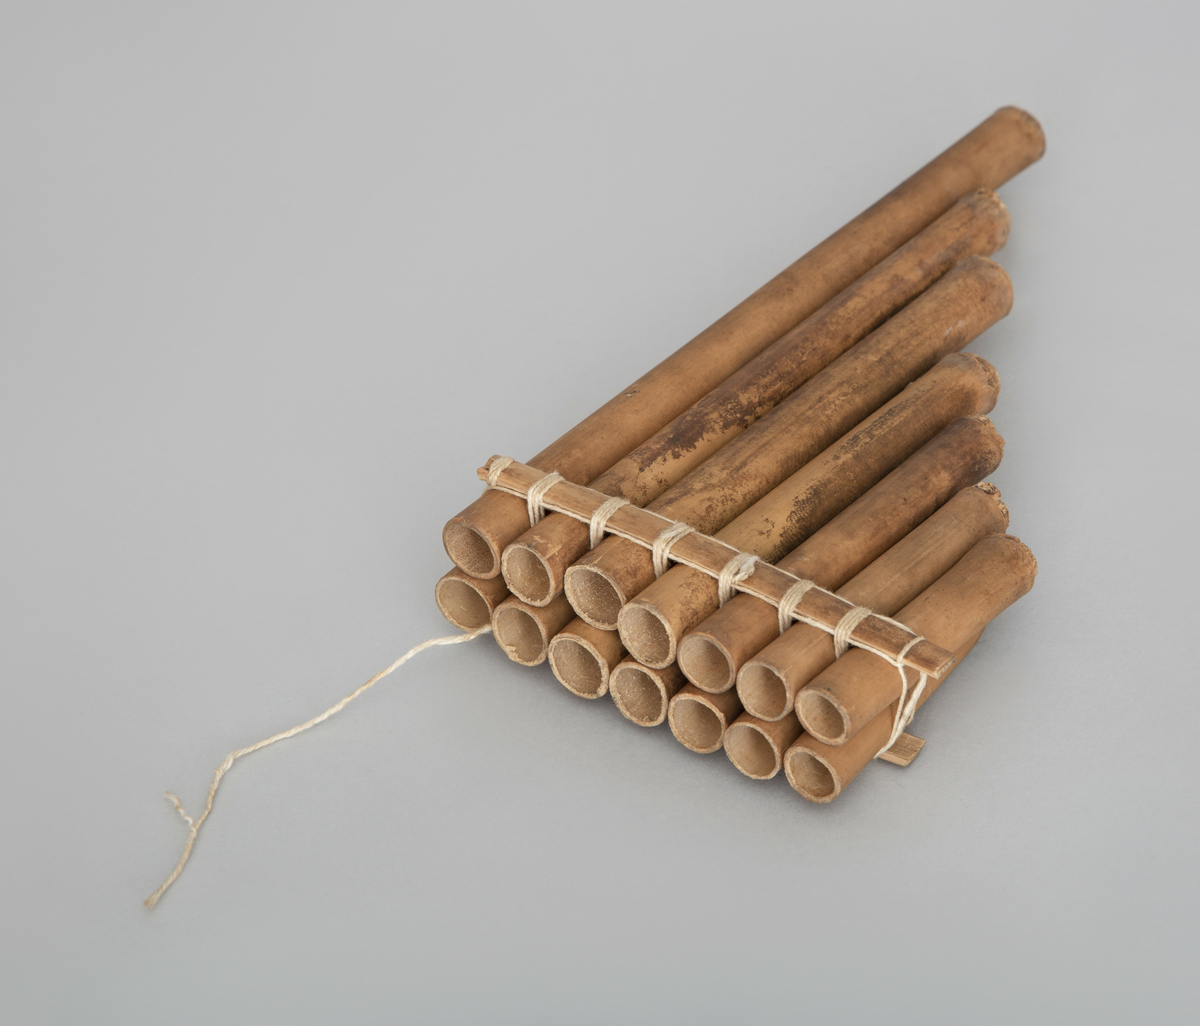 Fløyte som består av to rekker parallelle bambusrør av avtagende lengde. Syv rør i hver rekke. Bundet fast til hverandre i flåteform. Den ene raden åpen, den andre lukket.